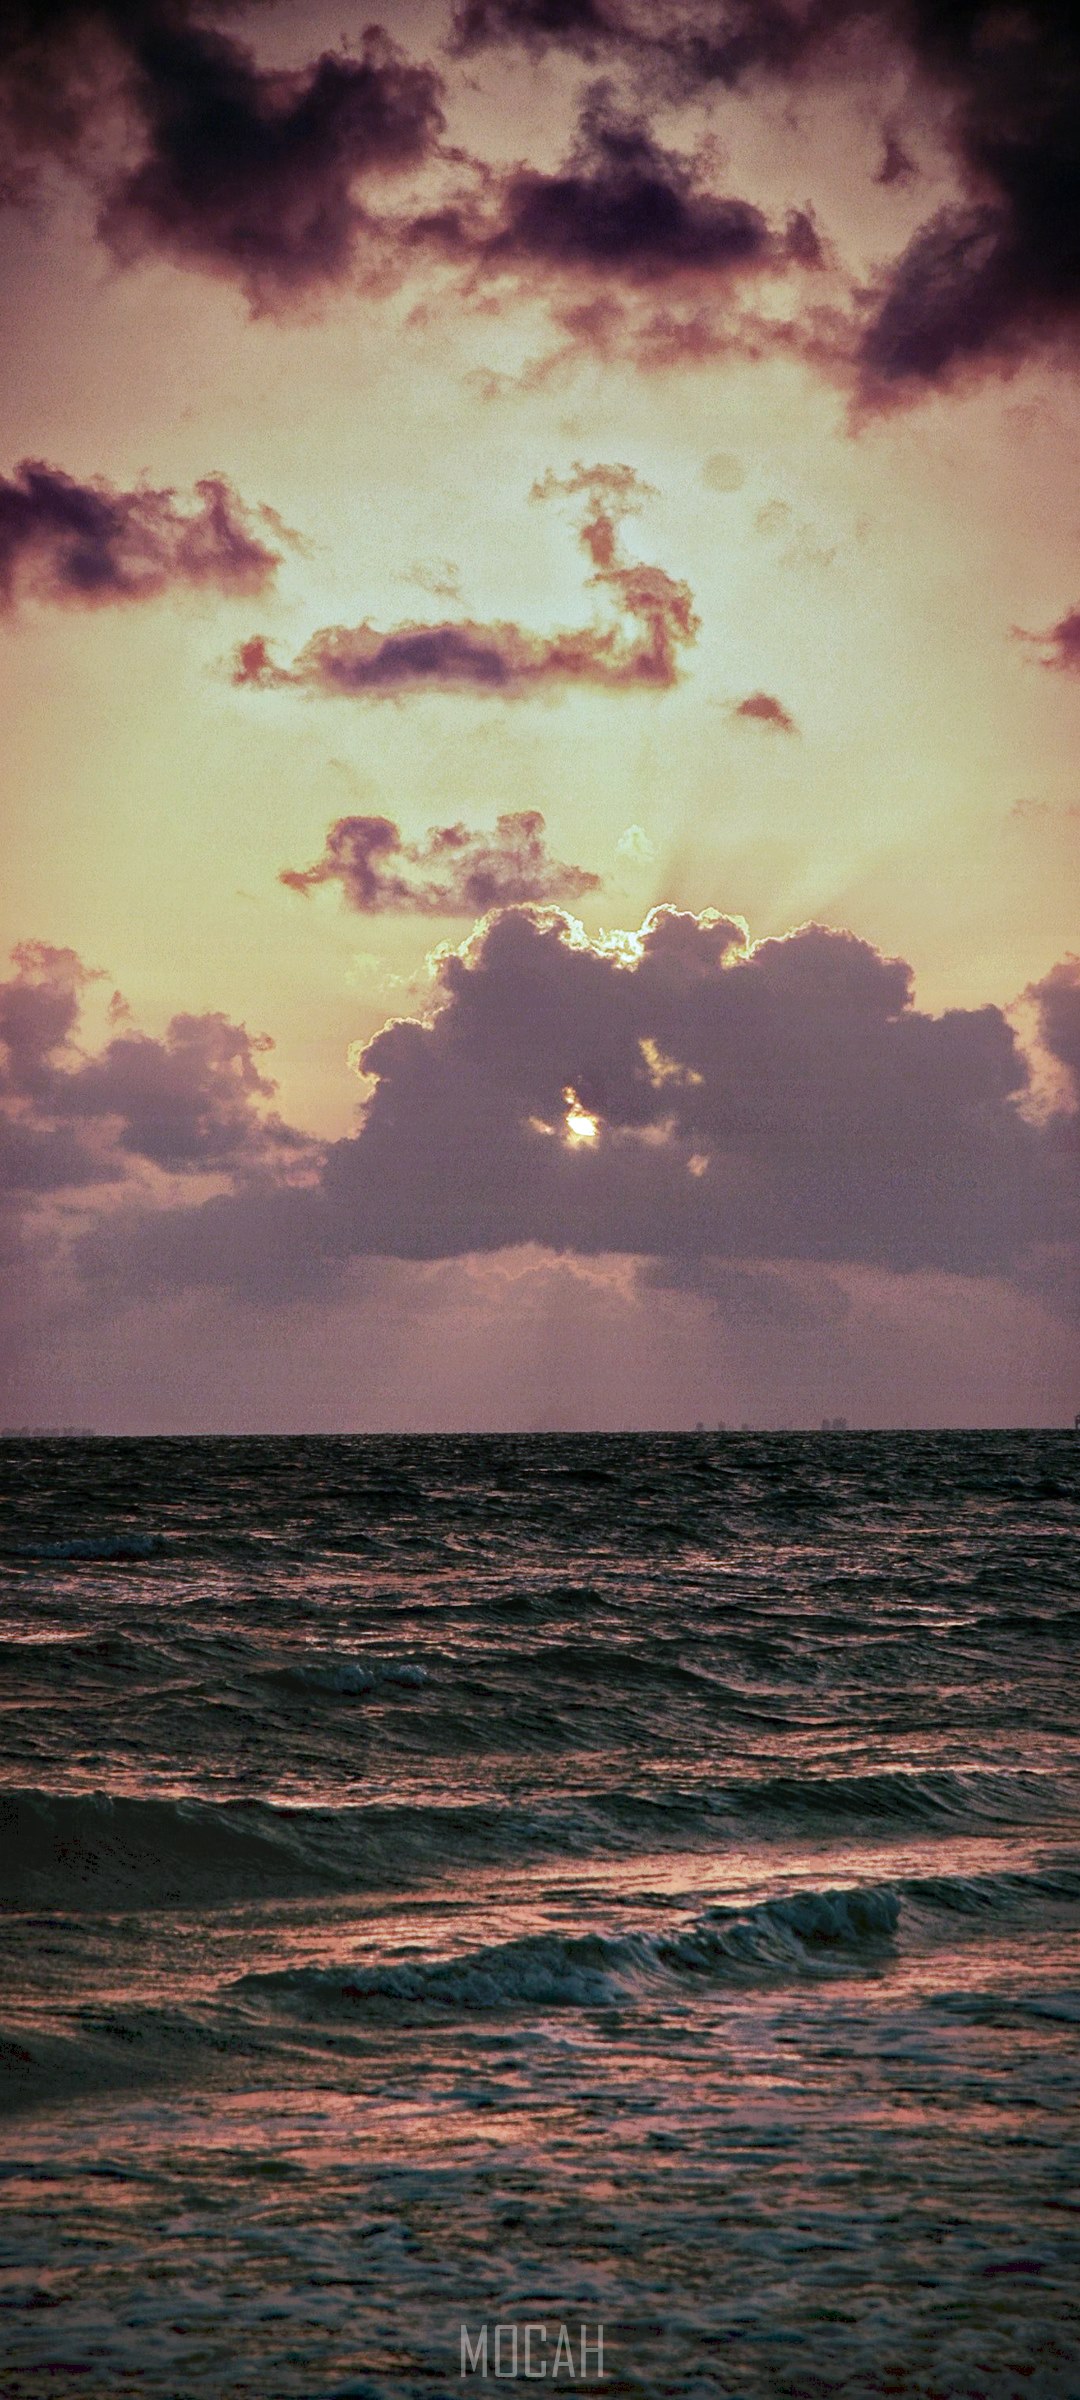 cloud ocean beach and sunset hd, OnePlus 8 5G wallpaper HD download, 1080x2400 Gallery HD Wallpaper